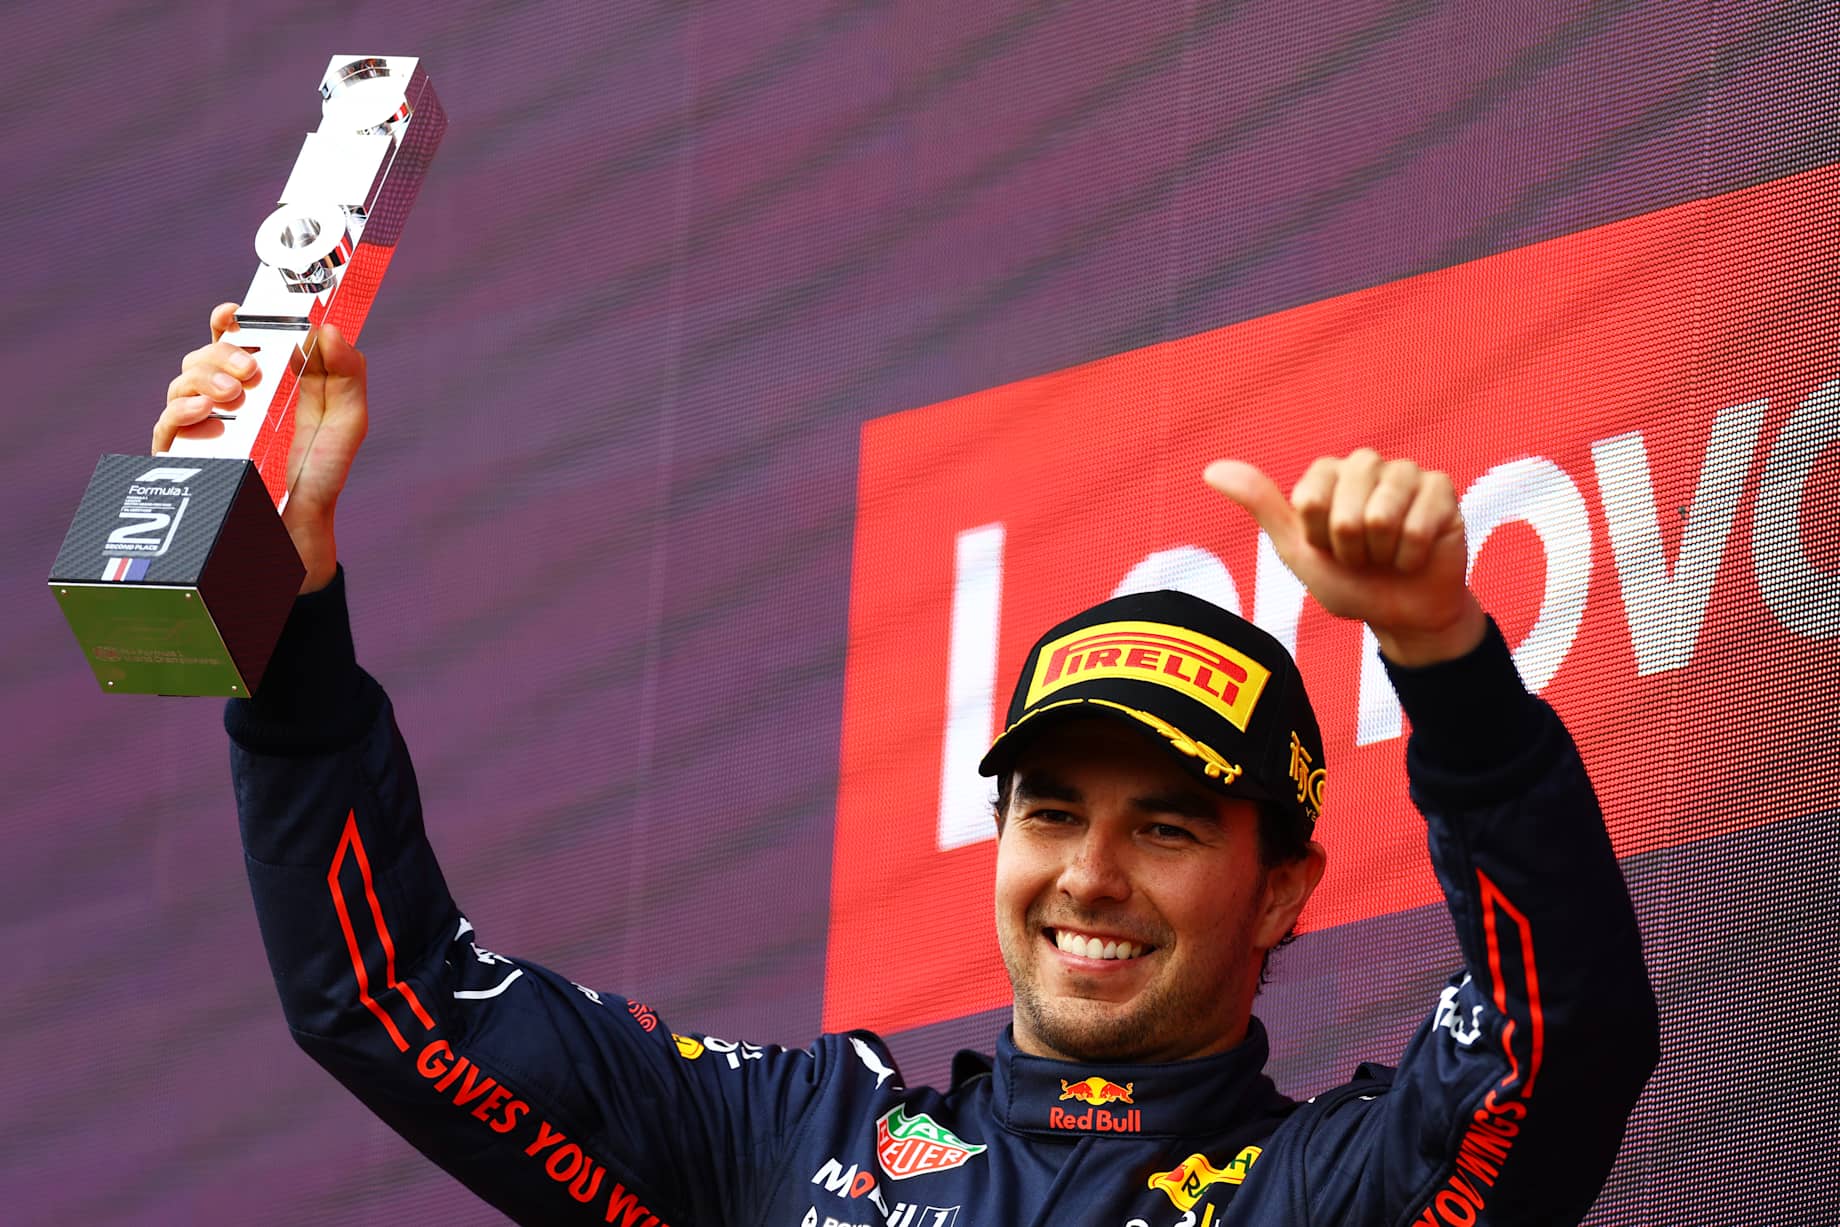 Checo Pérez Levantando su Trofeo en el Gran Premio de Gran Bretaña, Silverstone 2022 Fórmula 1